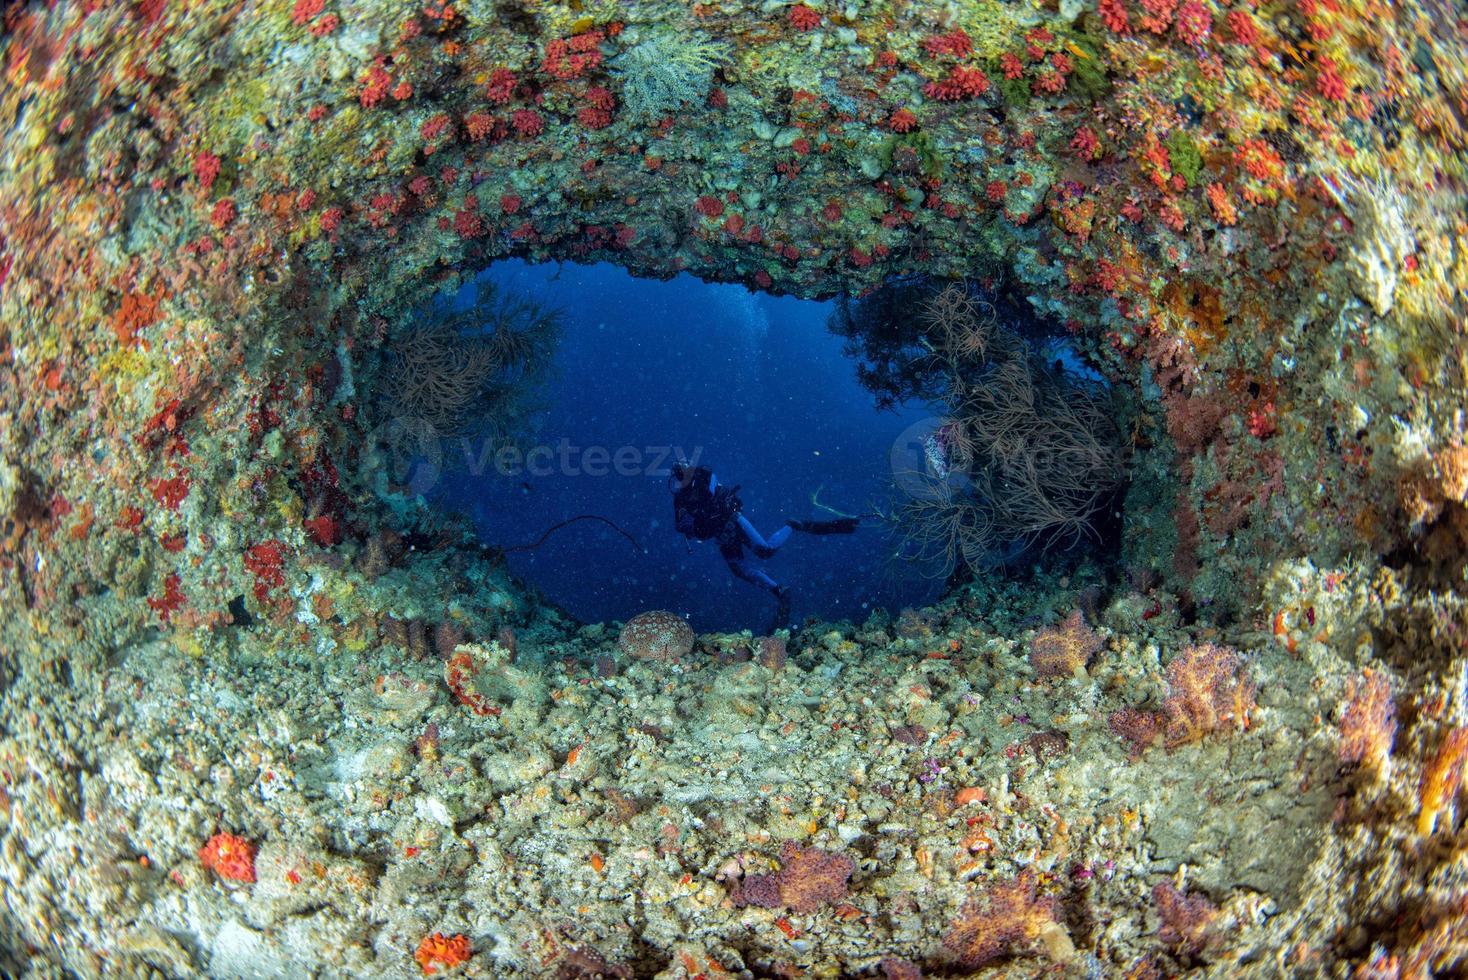 autorespiratore tuffatore immersione nave relitto nel Maldive indiano oceano foto